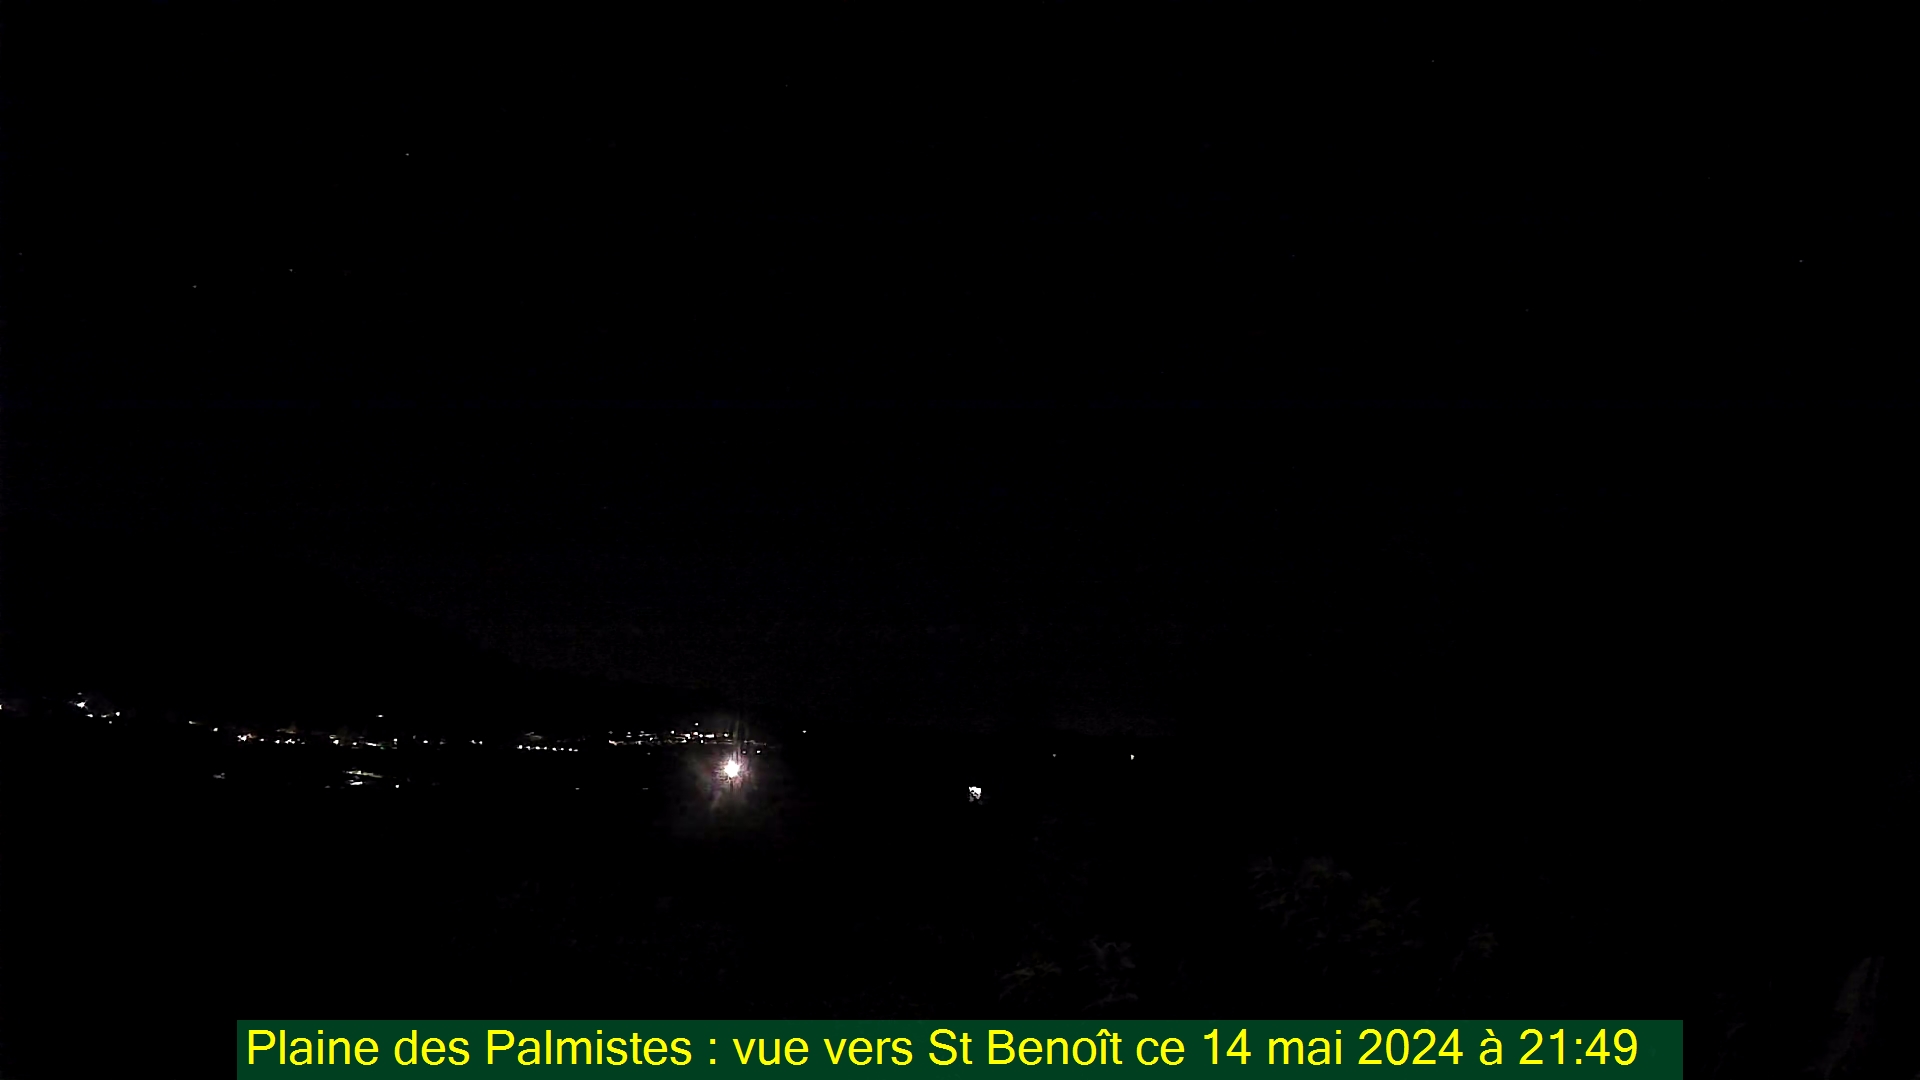 Saint-Denis (Réunion) Søn. 21:50